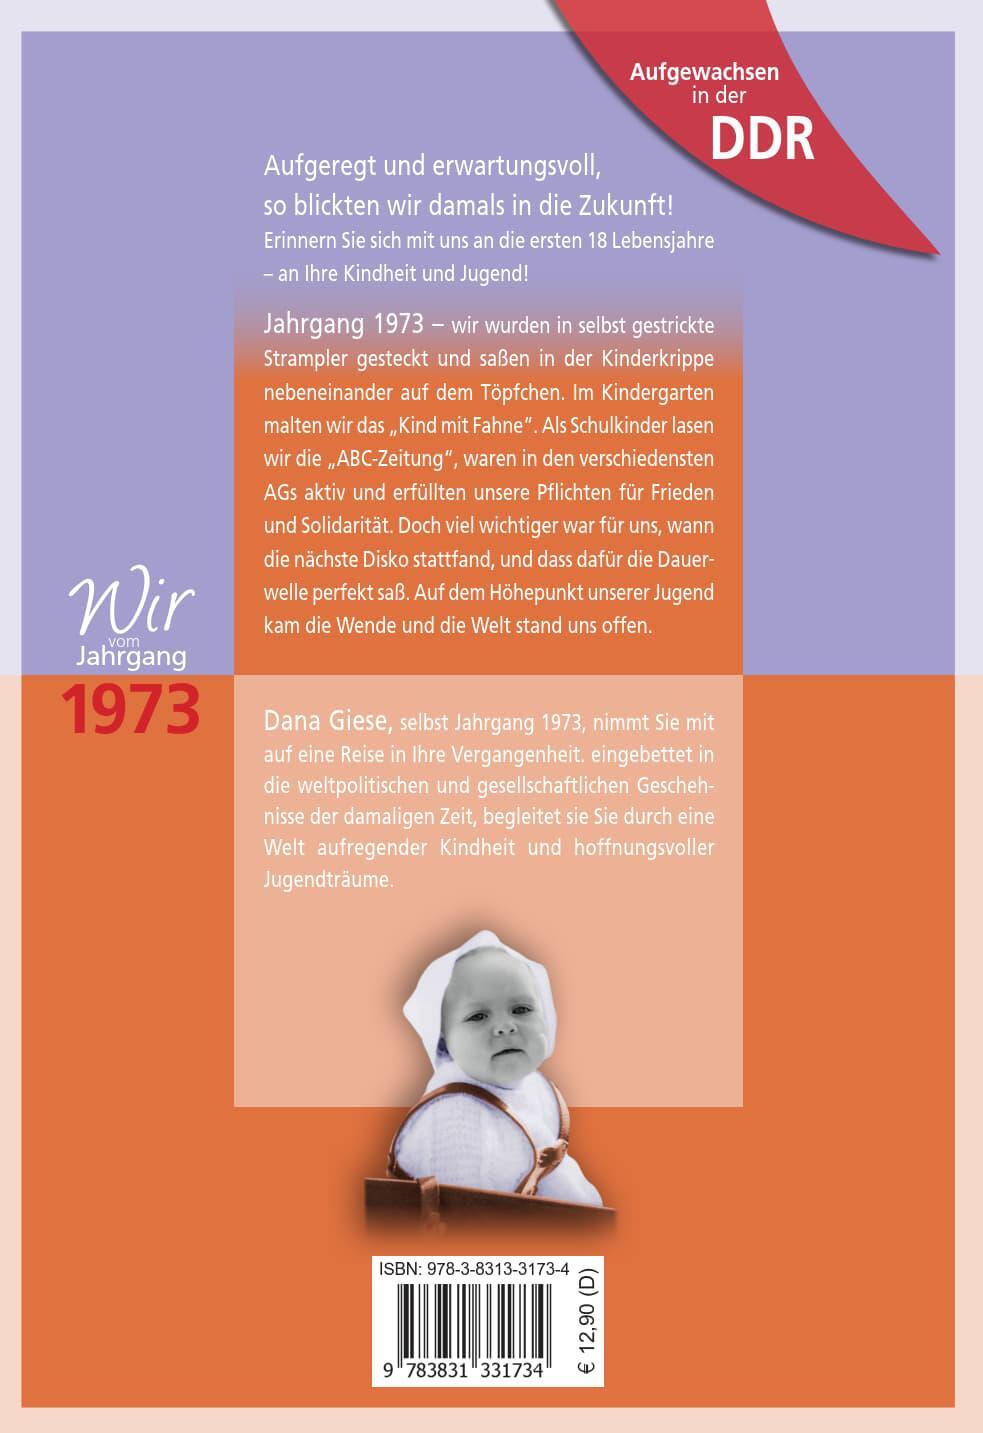 Rückseite: 9783831331734 | Aufgewachsen in der DDR - Wir vom Jahrgang 1973 - Kindheit und Jugend